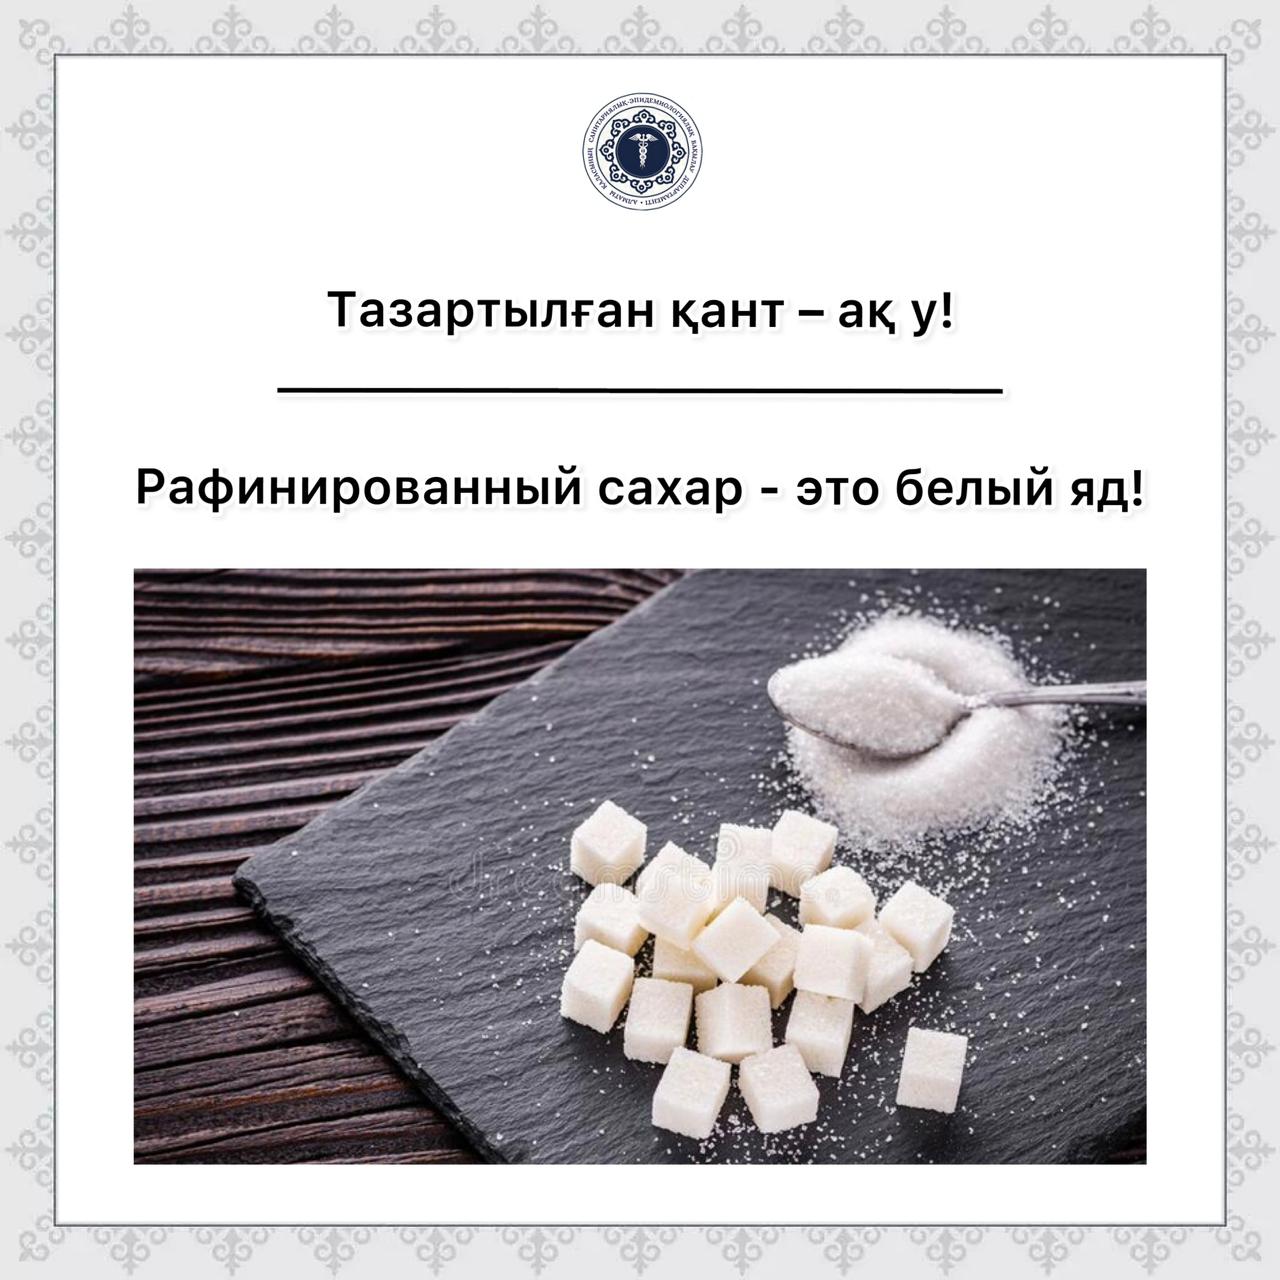 Сколько сахара в рафинаде. Рафинированный сахар. Рафинированный сахар полезнее. Белый яд сахар или соль. Сахар рафинад шариками.